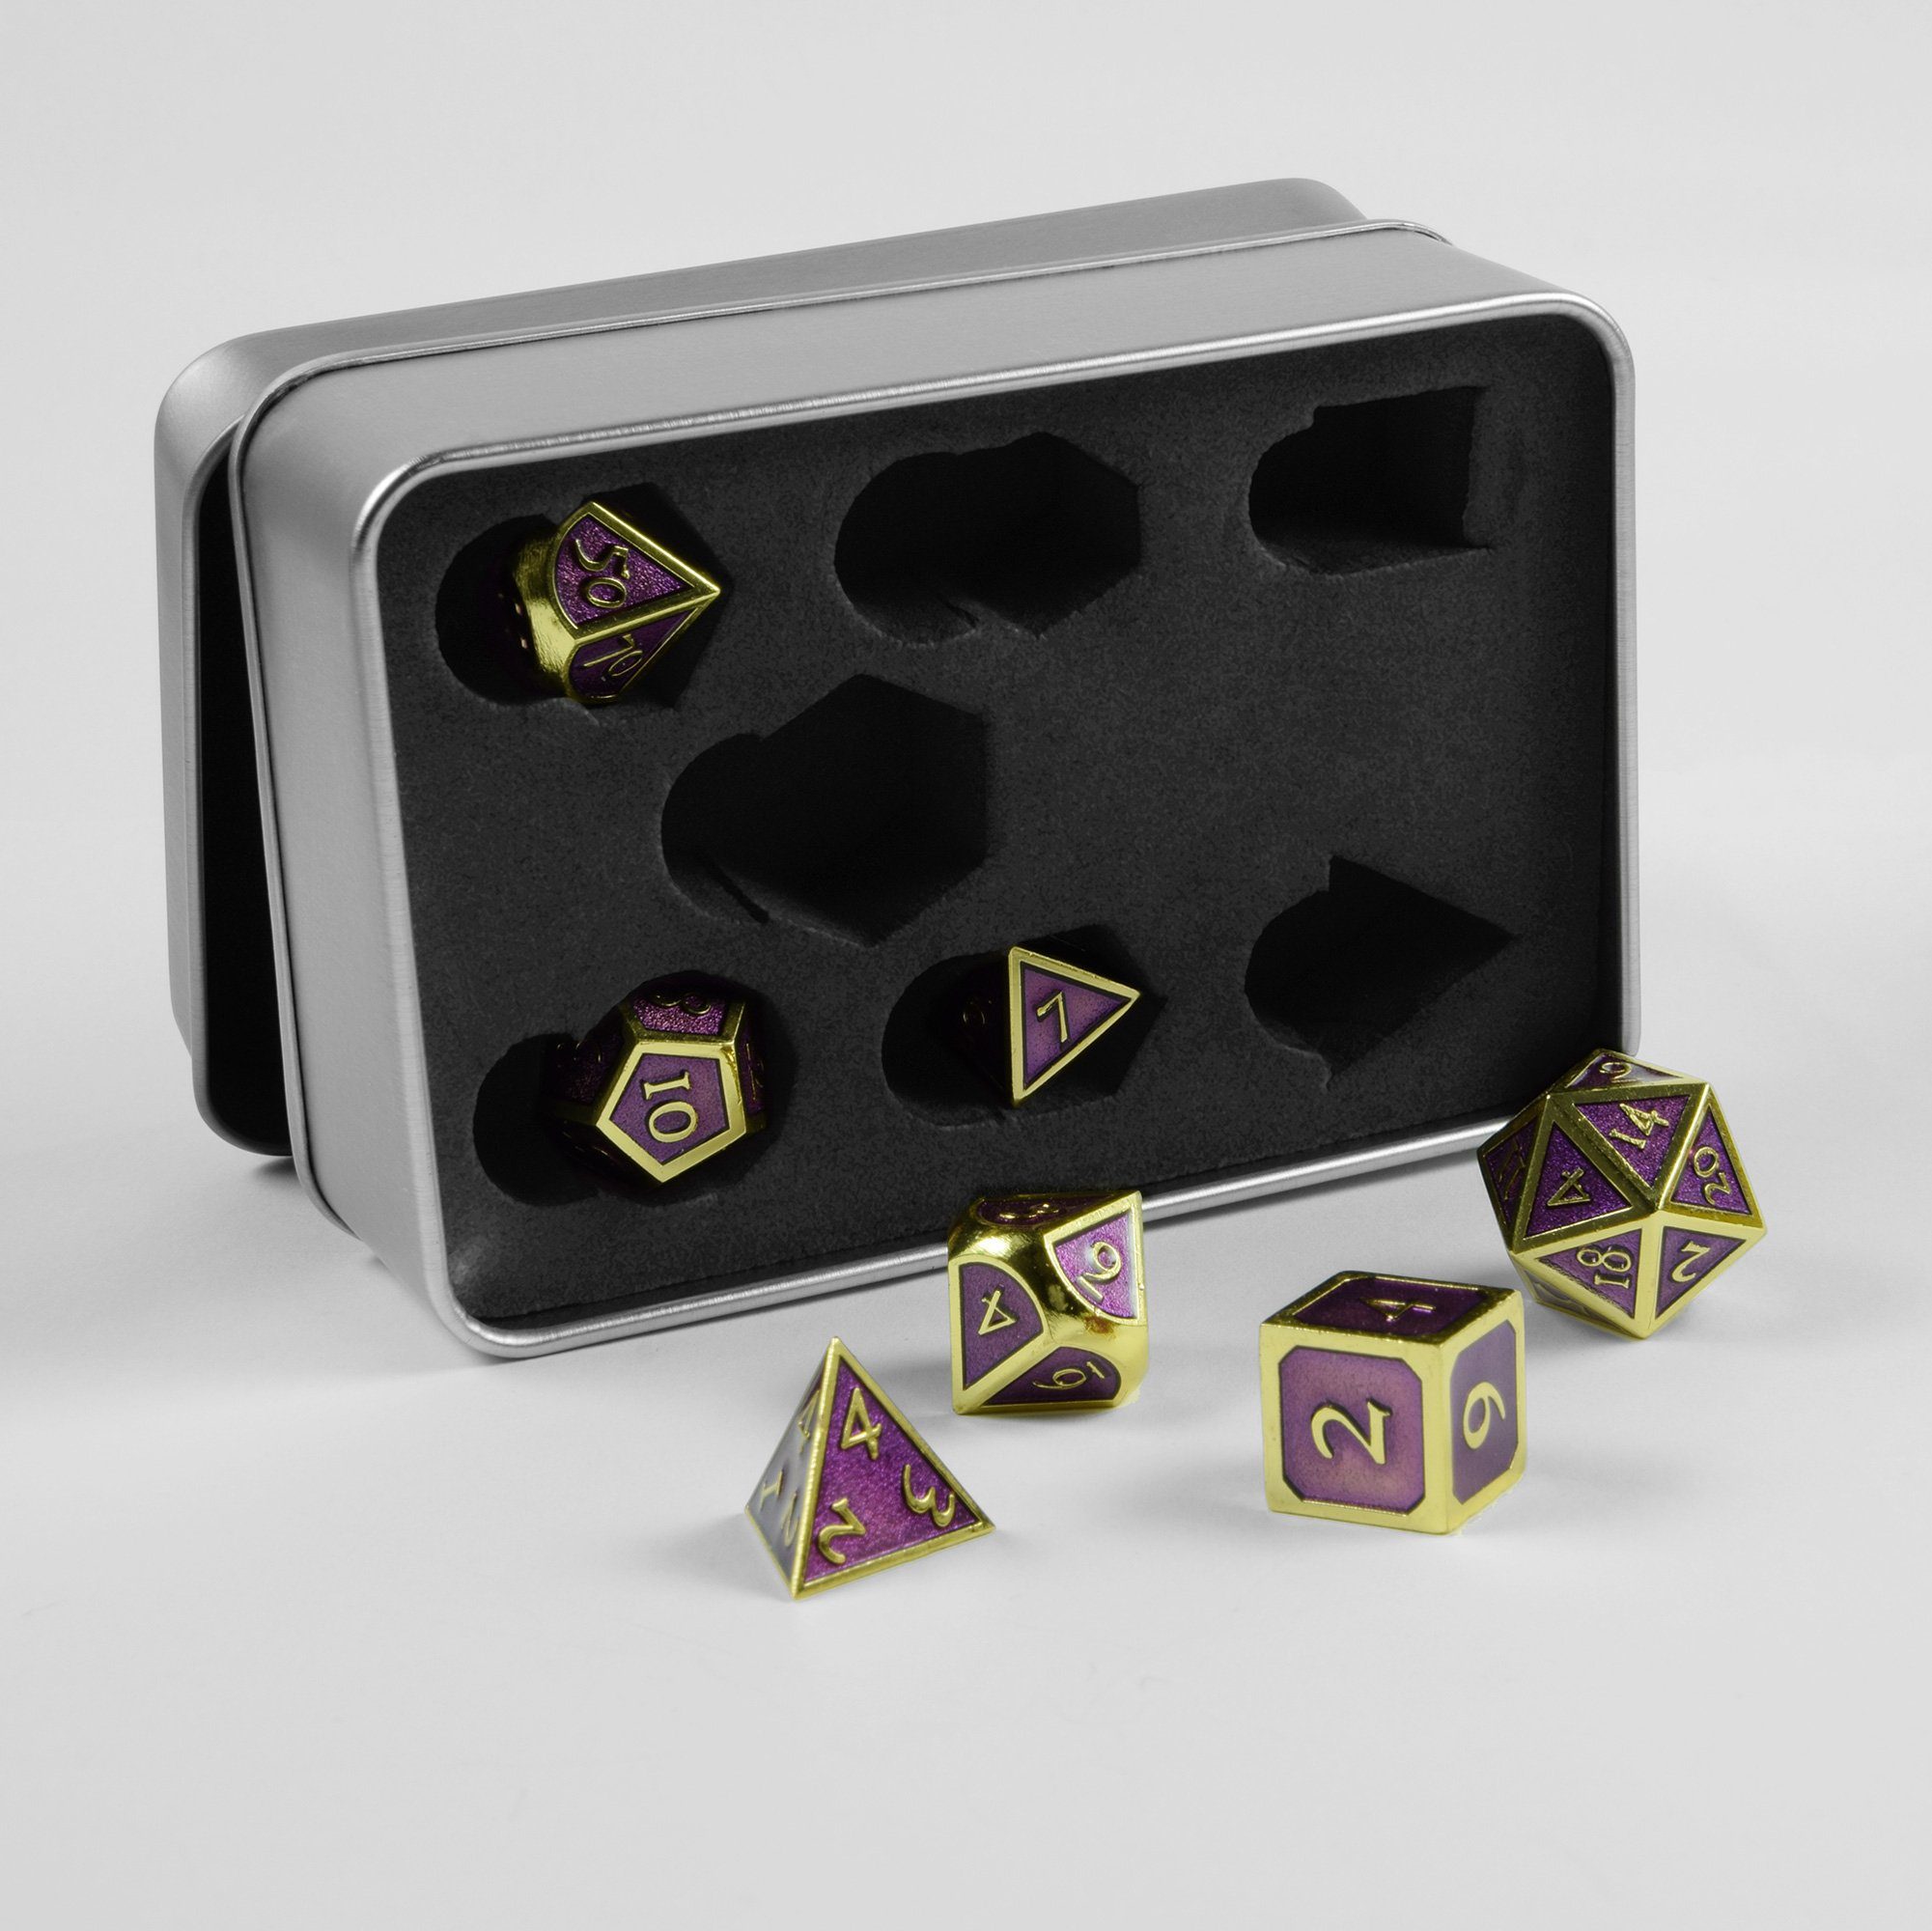 SHIBBY Spielesammlung, 7 polyedrische Metall-DND-Würfel in Steampunk Optik, inkl. Aufbewahrungsbox Gold/Lila